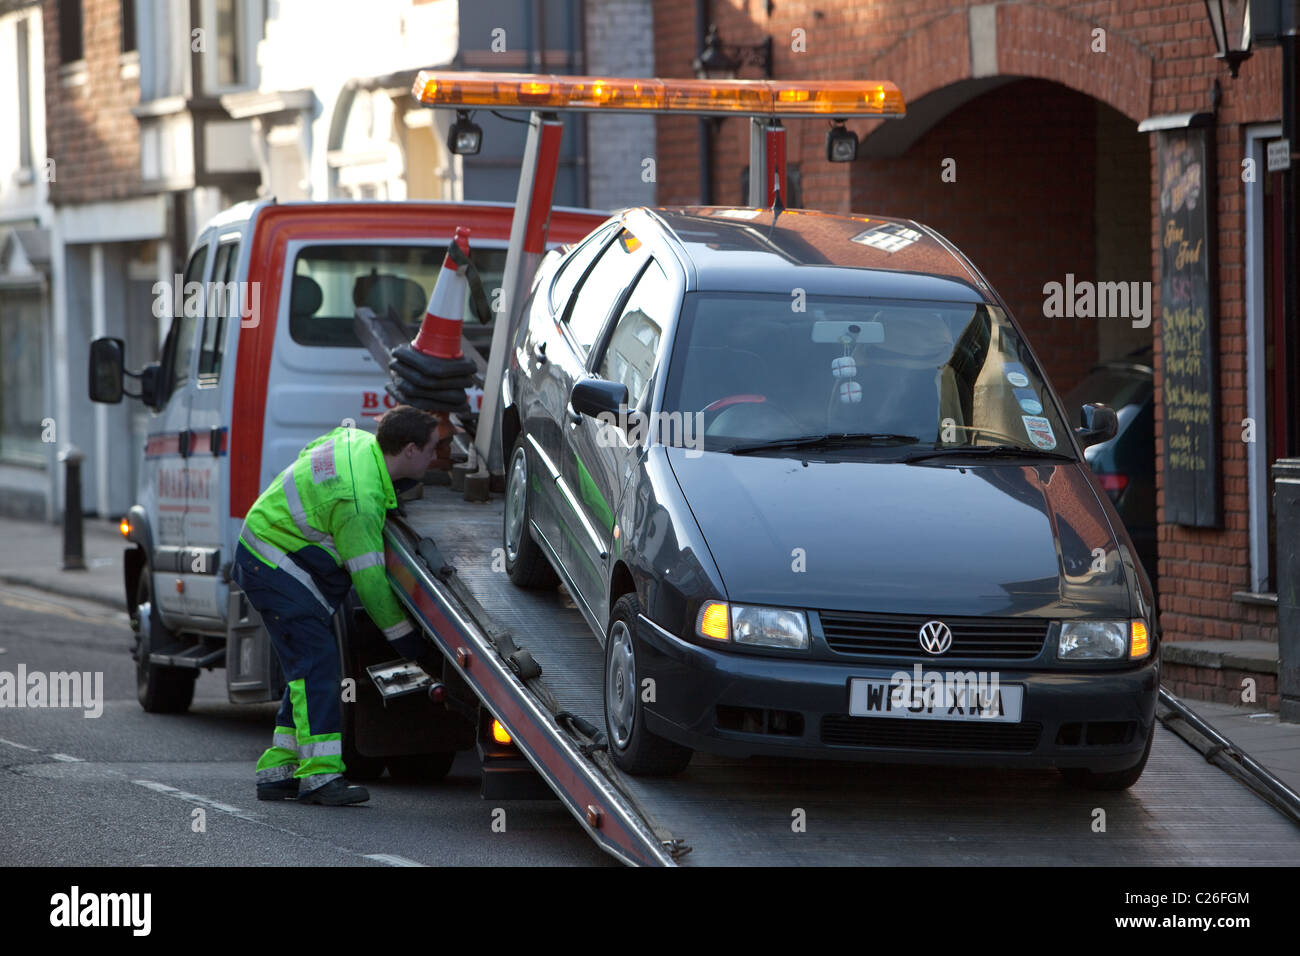 L'assistance routière de broken down car Salisbury Angleterre UK Banque D'Images